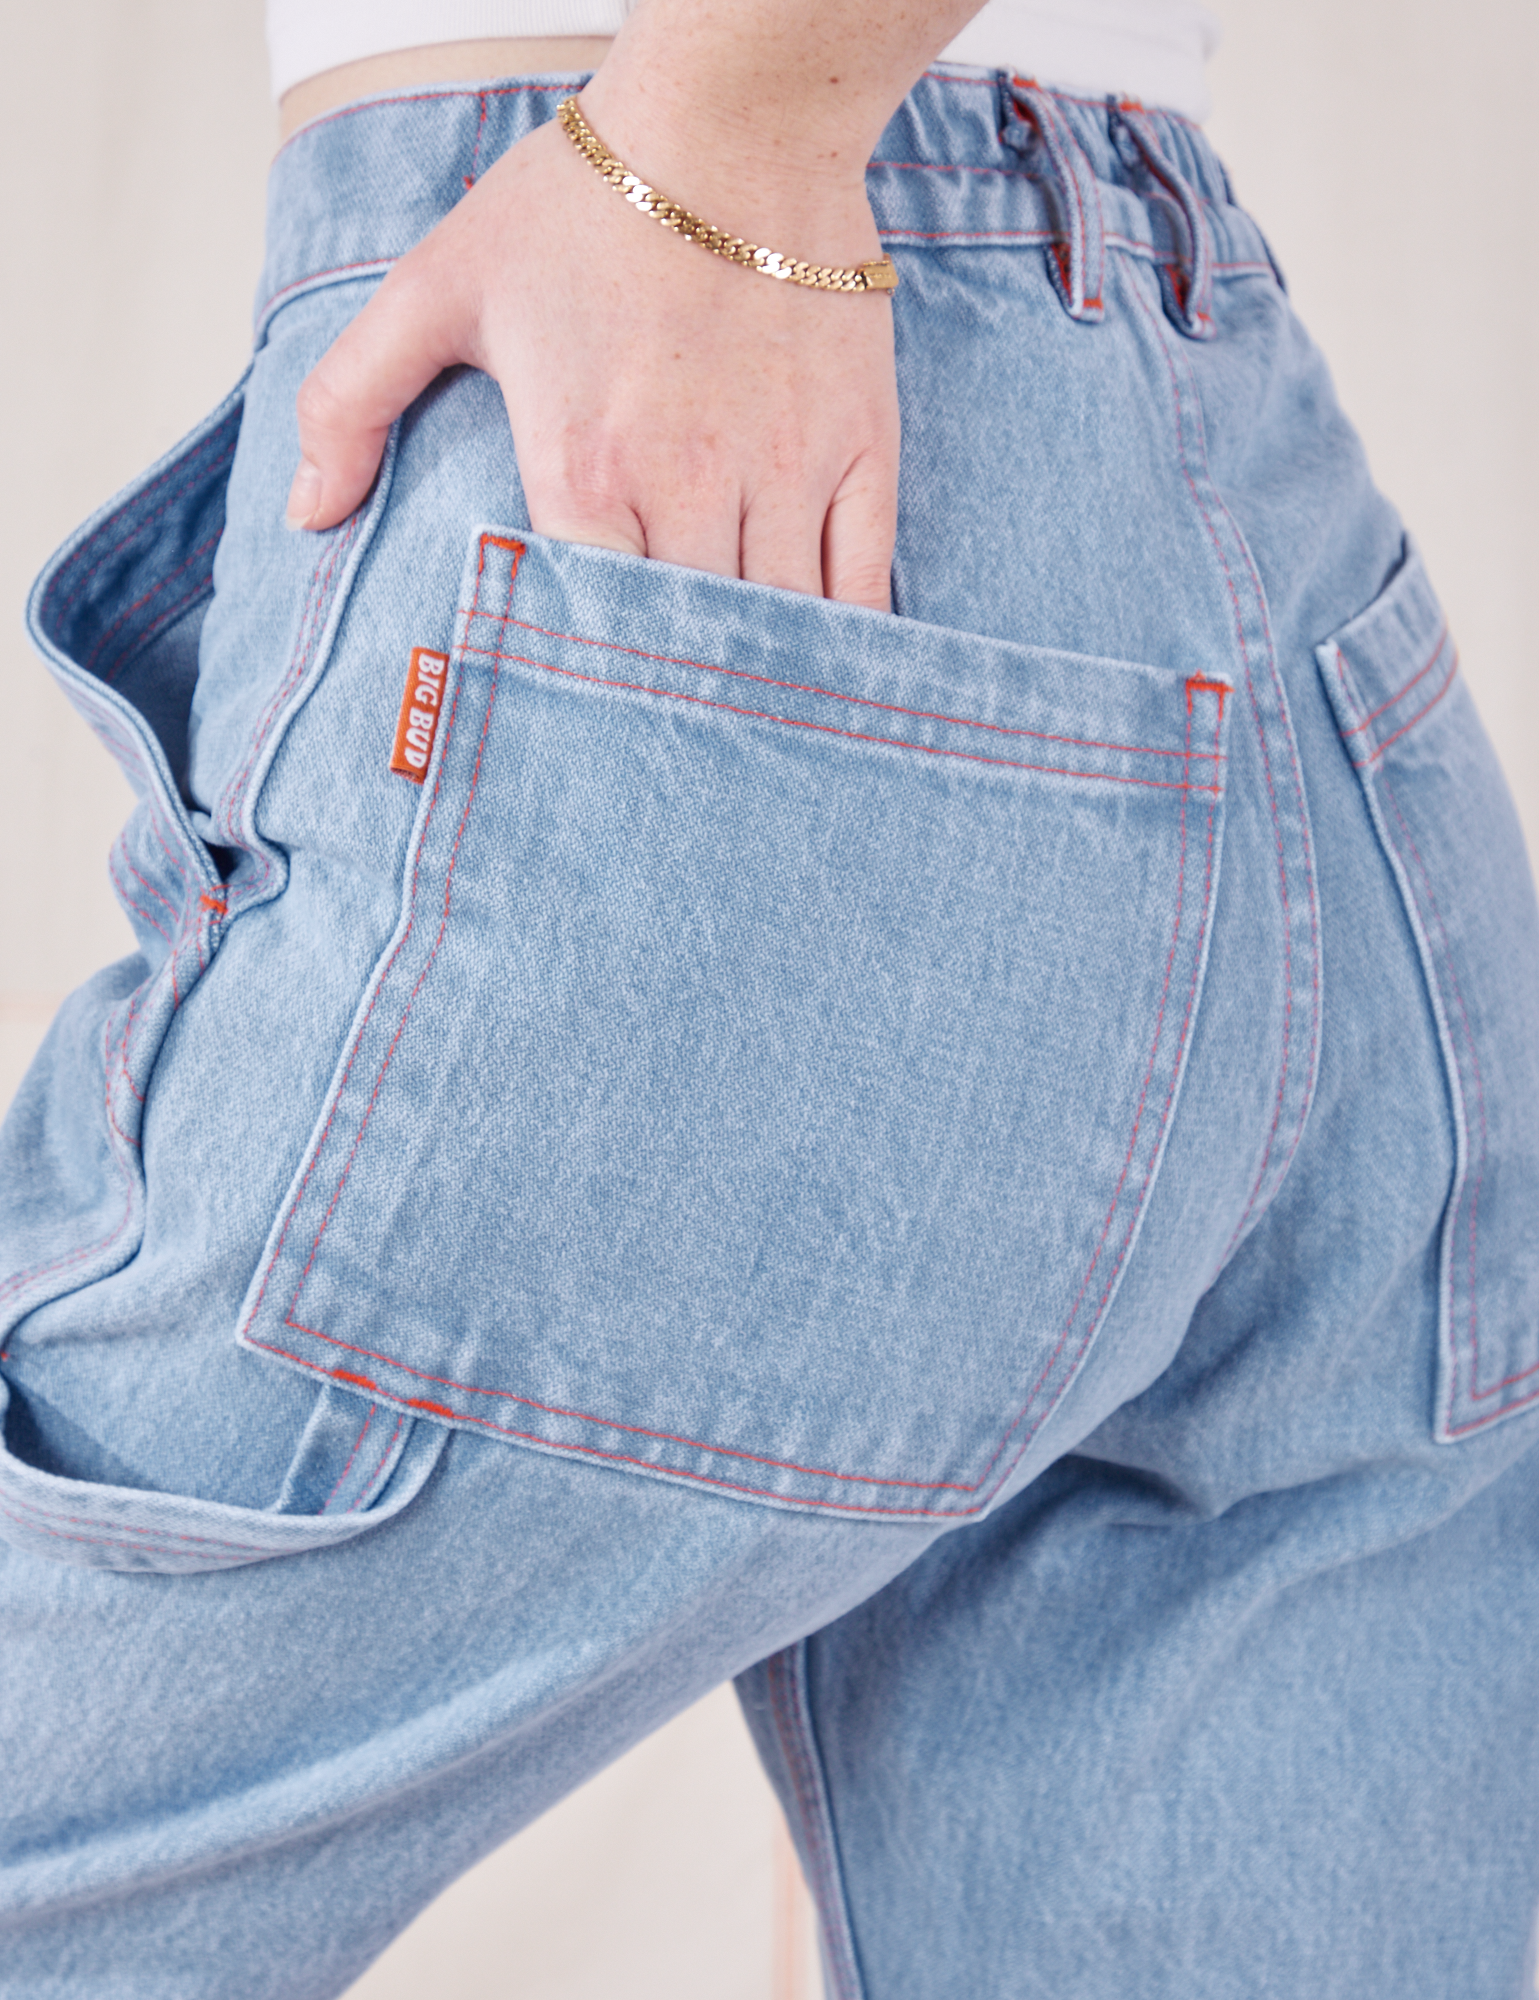 Petite Carpenter Jeans in Light Wash back pocket close up on Hana